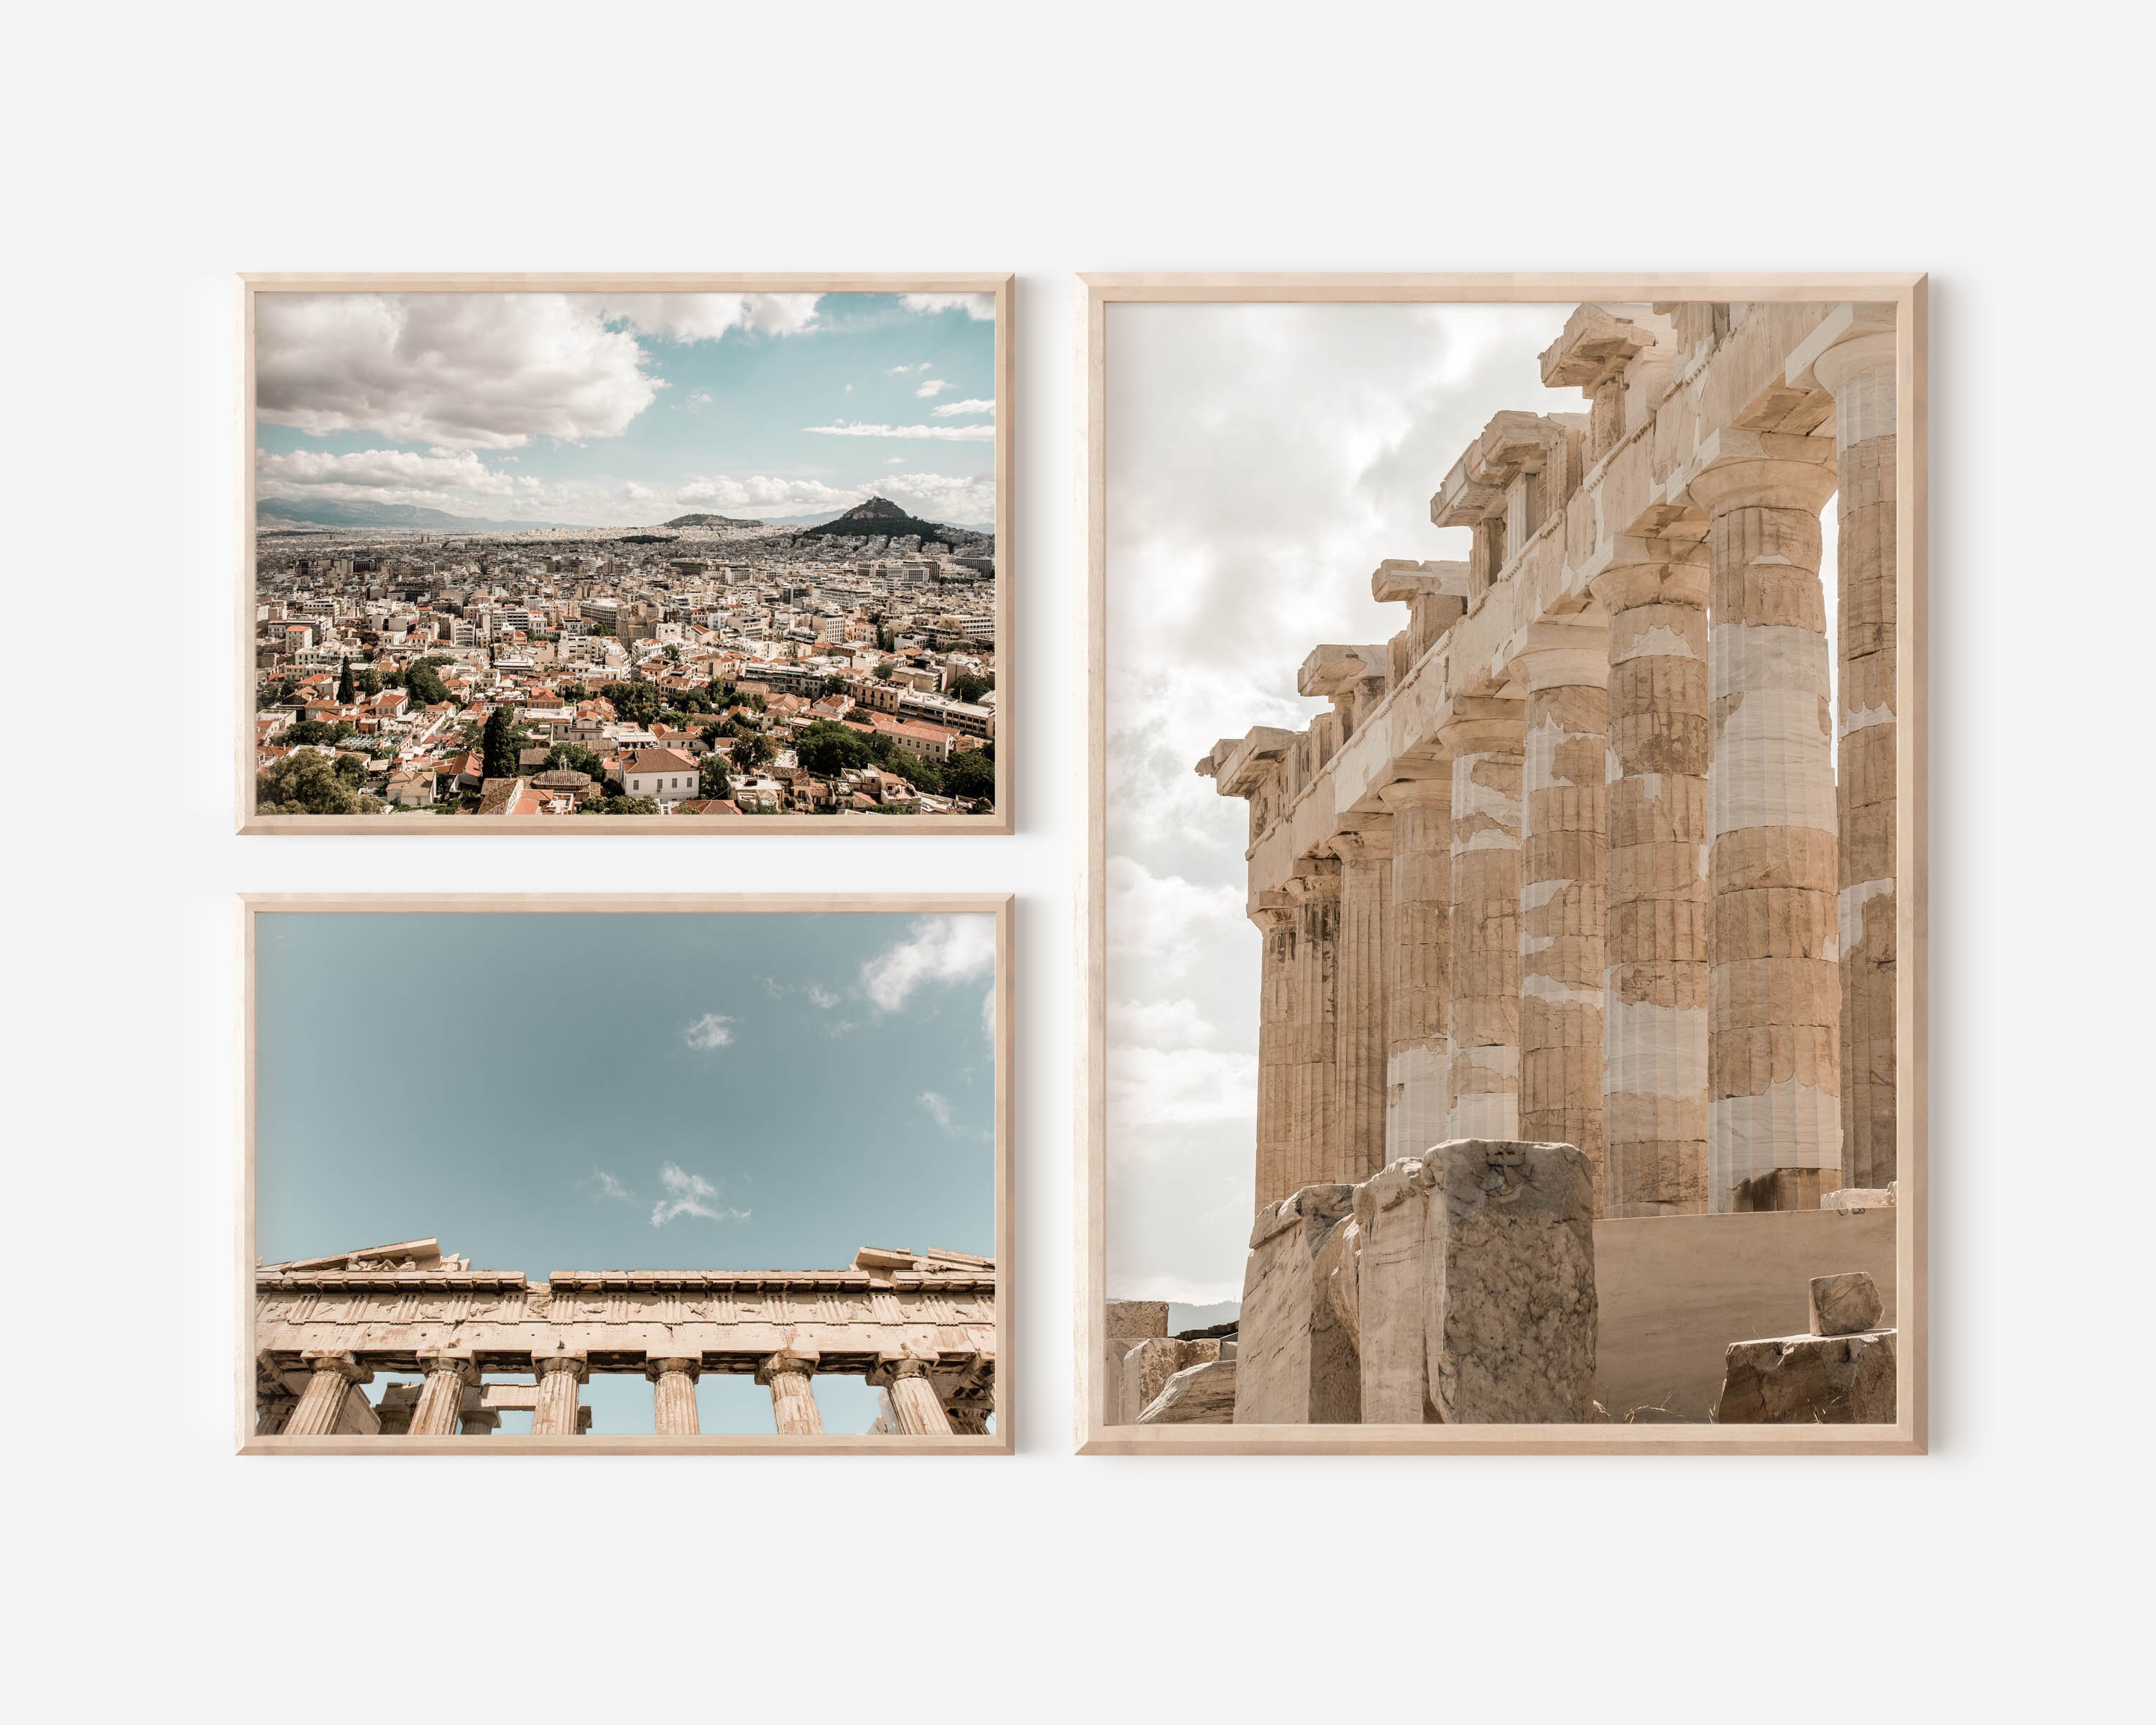 20 GREECE GREEK Collector Set Vintage Postage Stamps Ruins Landscapes  Statues Crafts Collage Ephemera Altered Art Philately Stamp Albums 1f 